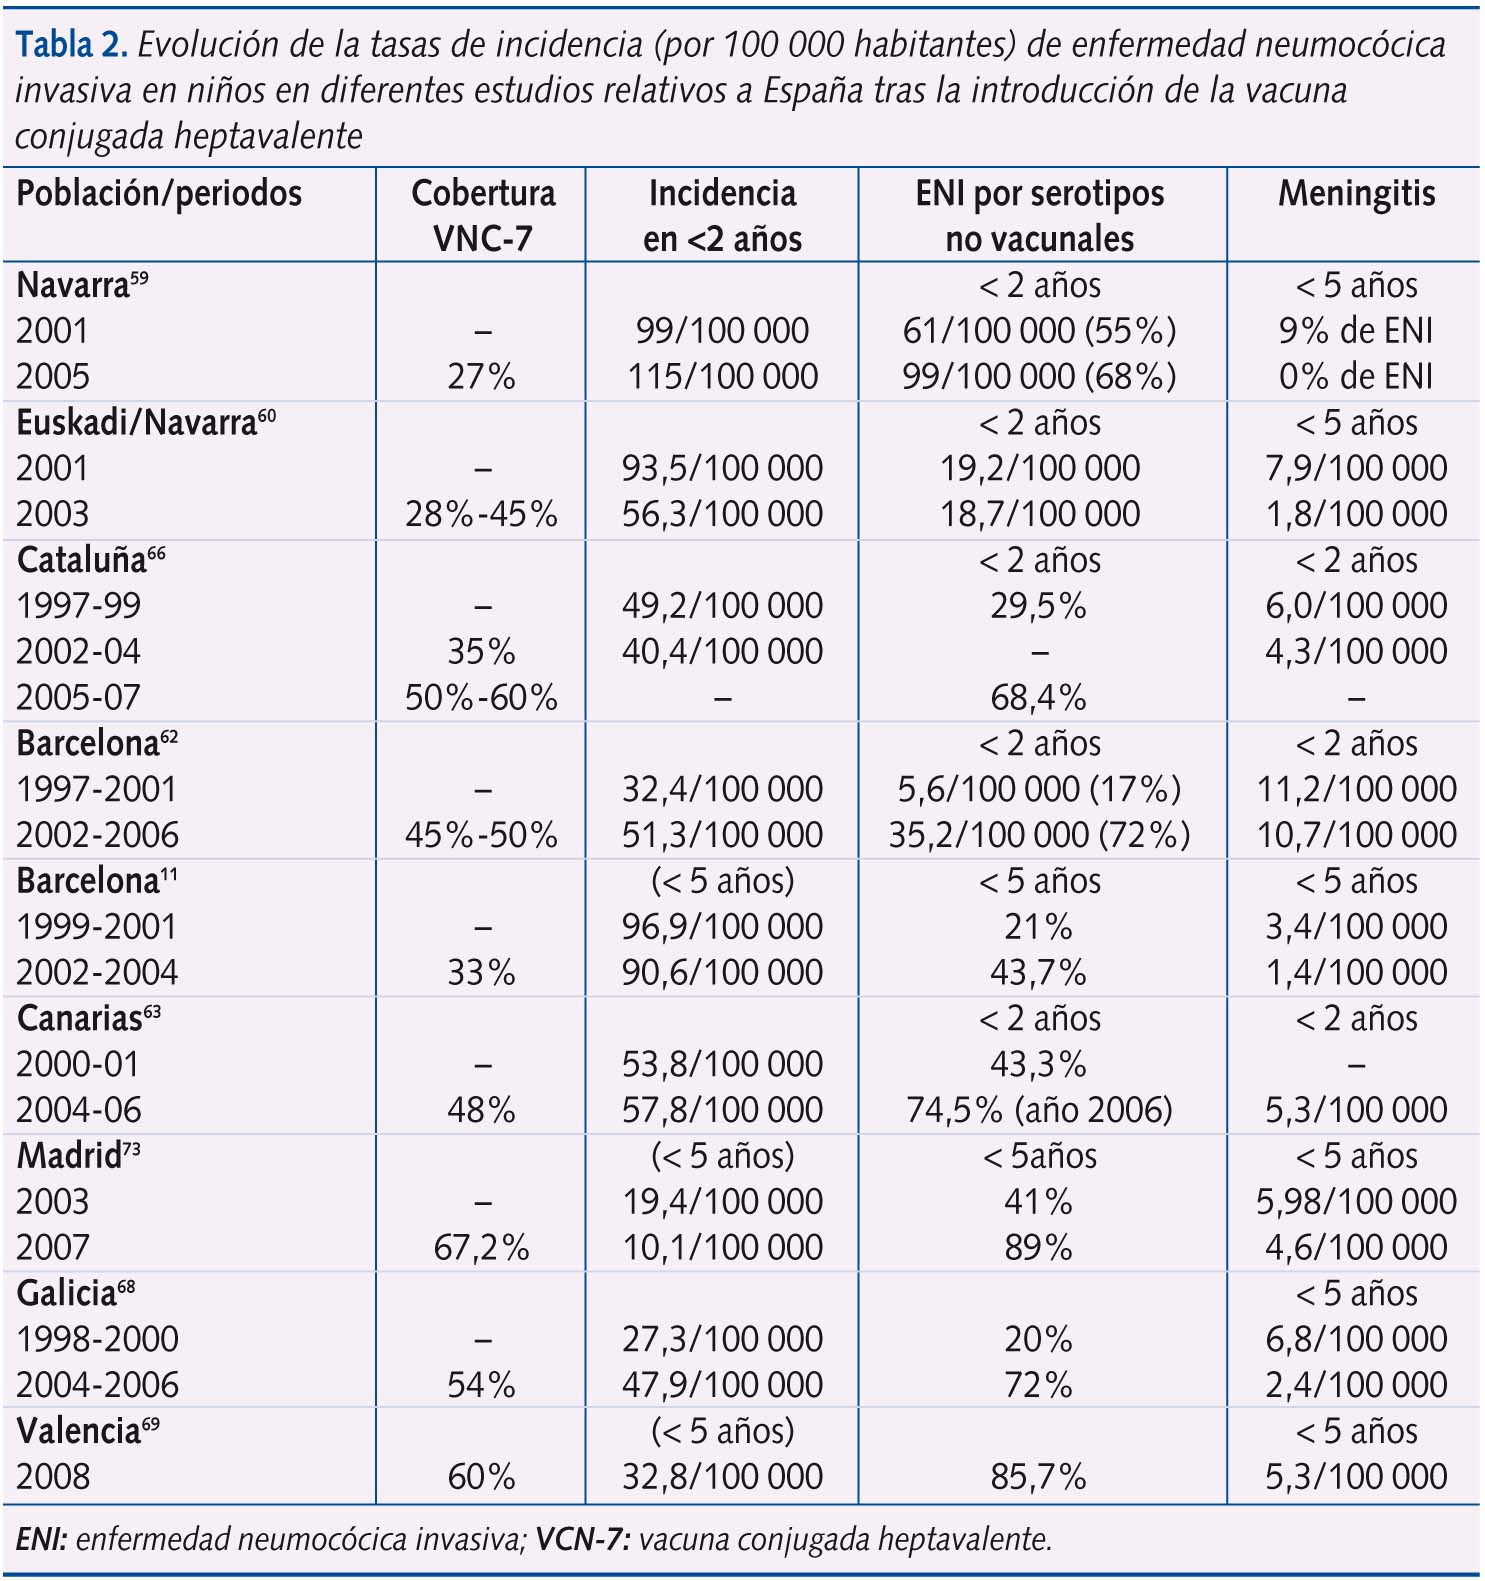 Tabla 2. Evolución de la tasas de incidencia (por 100 000 habitantes) de enfermedad neumocócica invasiva en niños en diferentes estudios relativos a España tras la introducción de la vacuna conjugada heptavalente